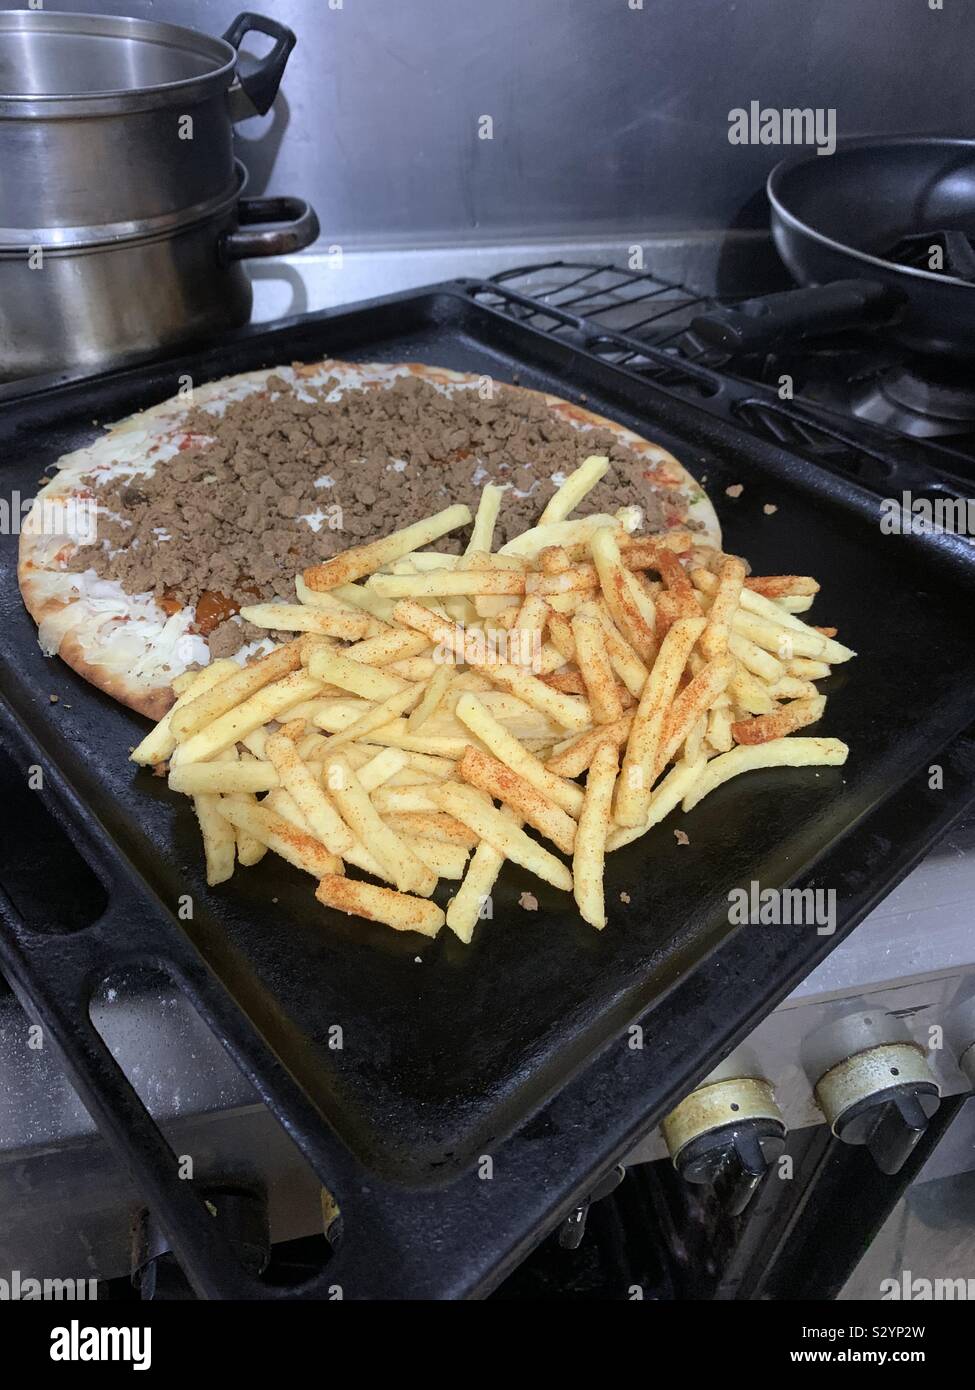 Eine Margherita pizza garniert mit Pommes frites meatfree Quorn mit Paprika Hackfleisch. 🍕 Zeitraum in den Backofen zu gehen. Stockfoto